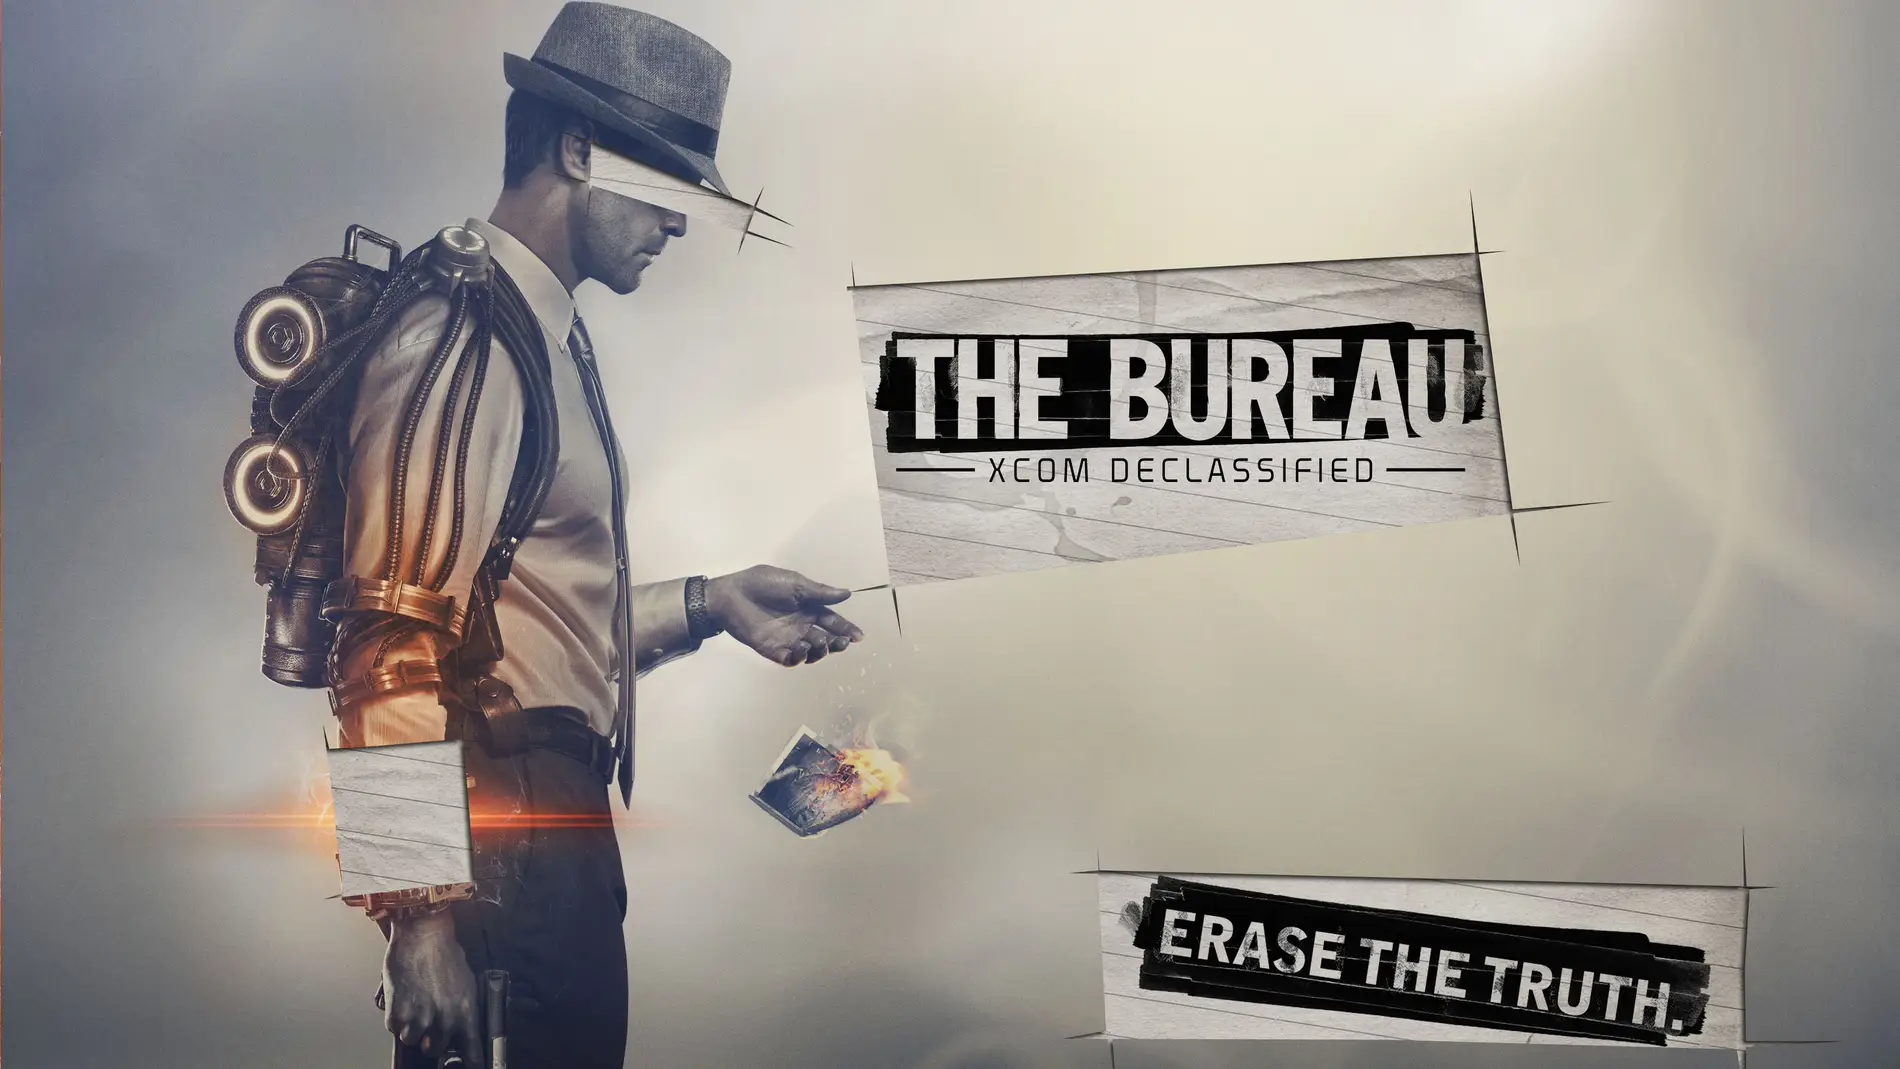 The Bureau: Xcom Desclassified